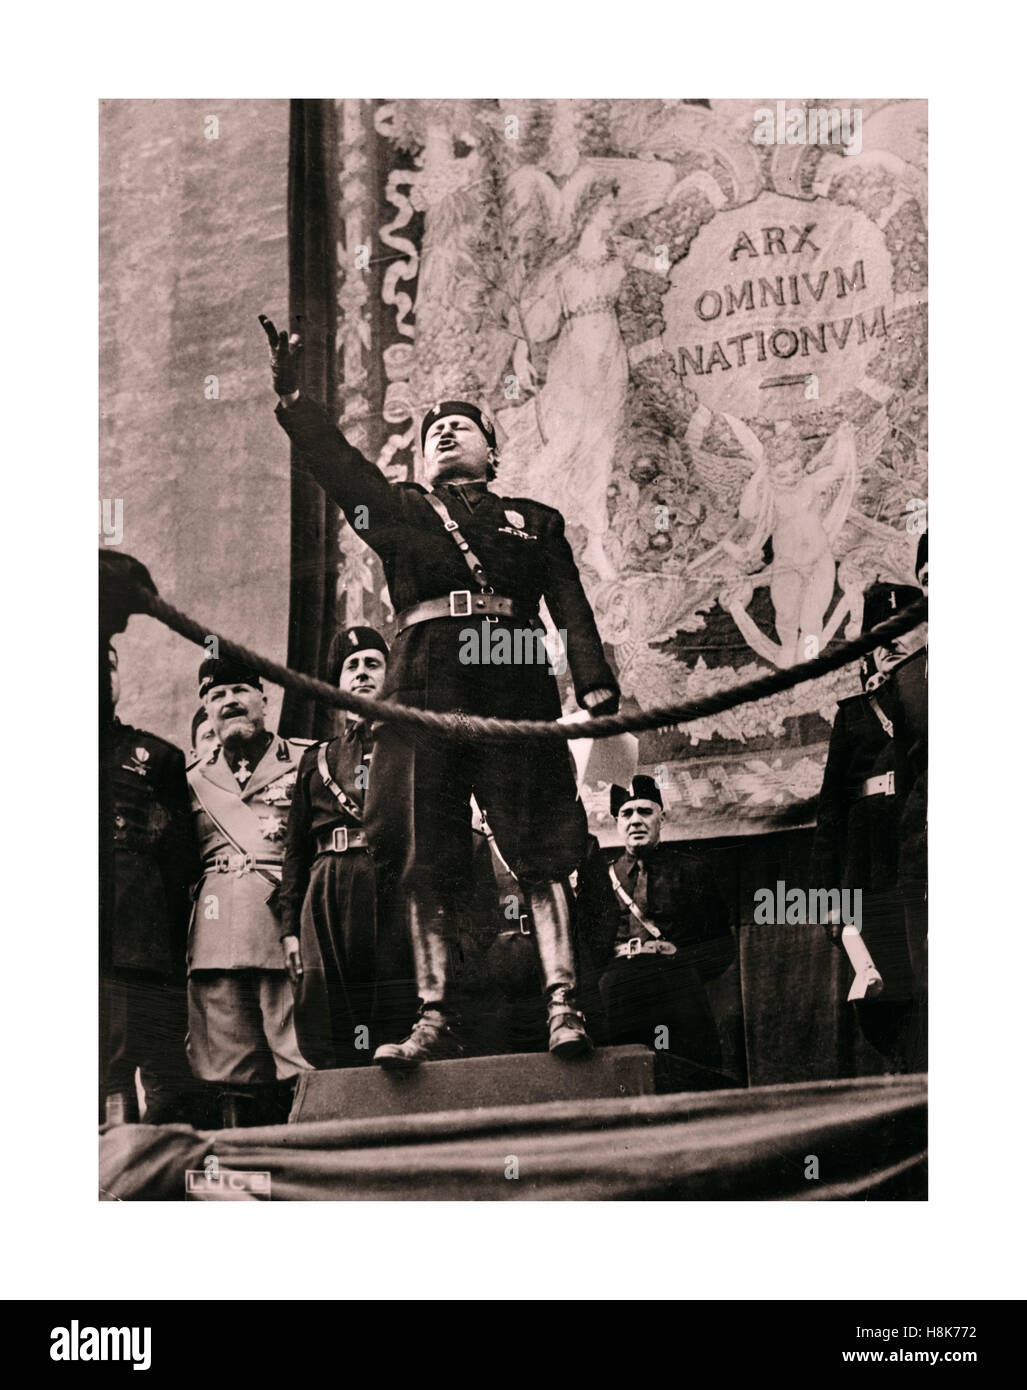 Benito Mussolini, Italienisch facist Diktator, in voller oratorischen Flow mit einer Masse in Rom mit einem Wandteppich hinter Lesen "arx omnium nationum" das Zentrum aller Nationen... (Cicero) Sitz des Römischen Reiches 1930 2.Weltkrieg ära Stockfoto